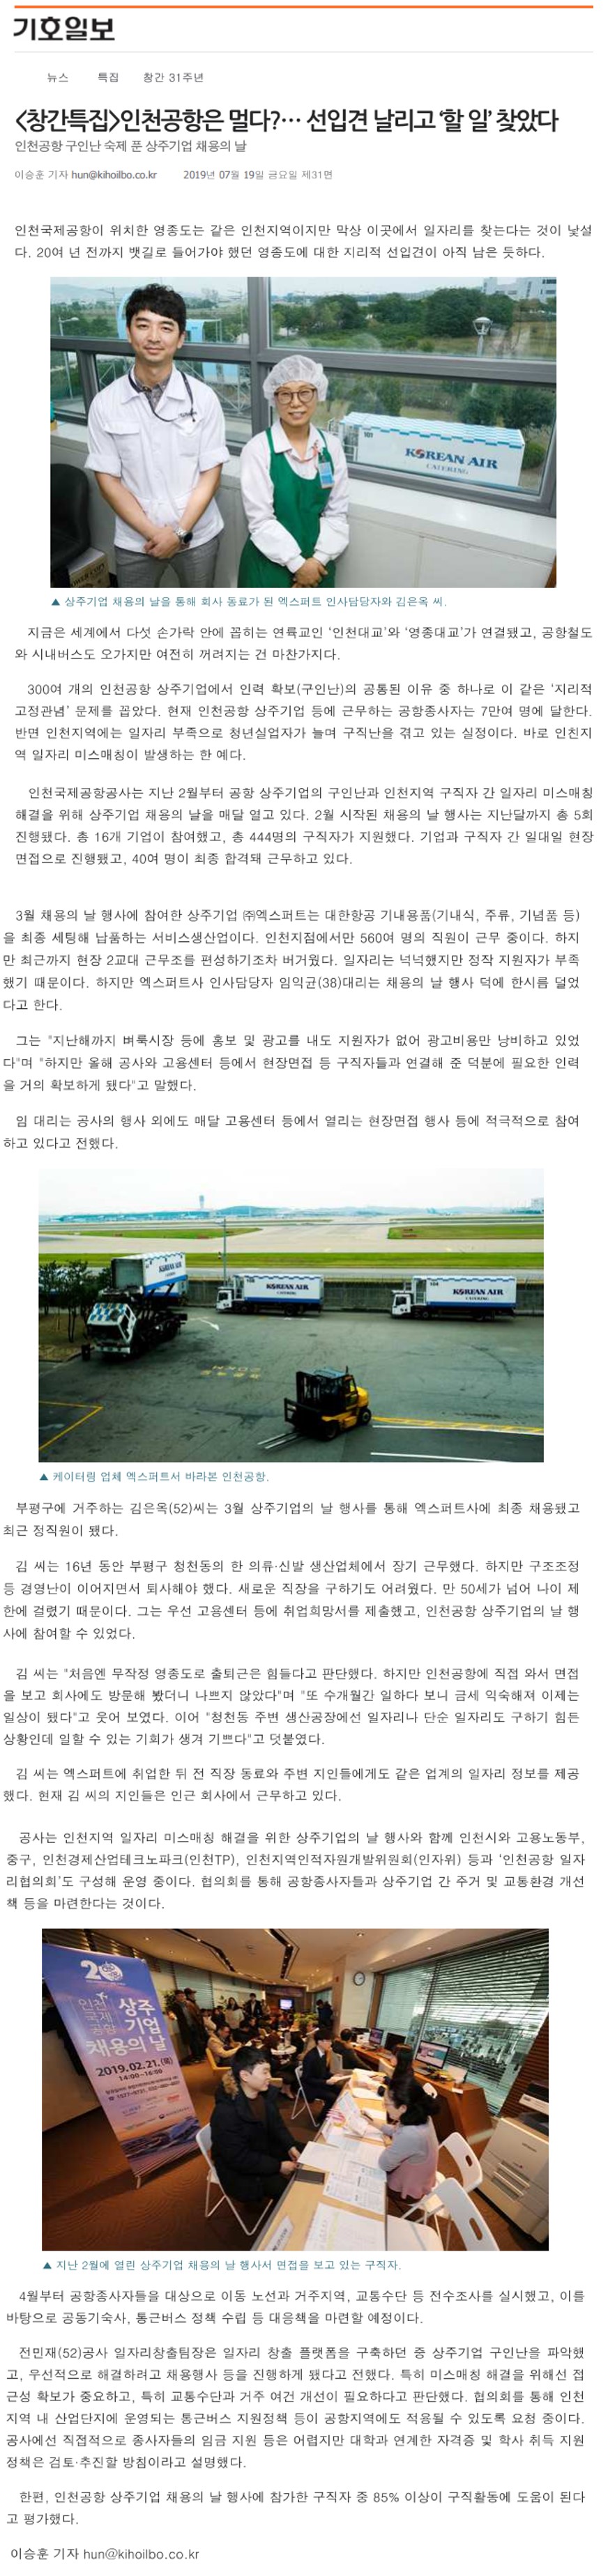 190719_기호일보_인천공항은 멀다 선입견 날리고 할 일 찾았다의 1번째 이미지